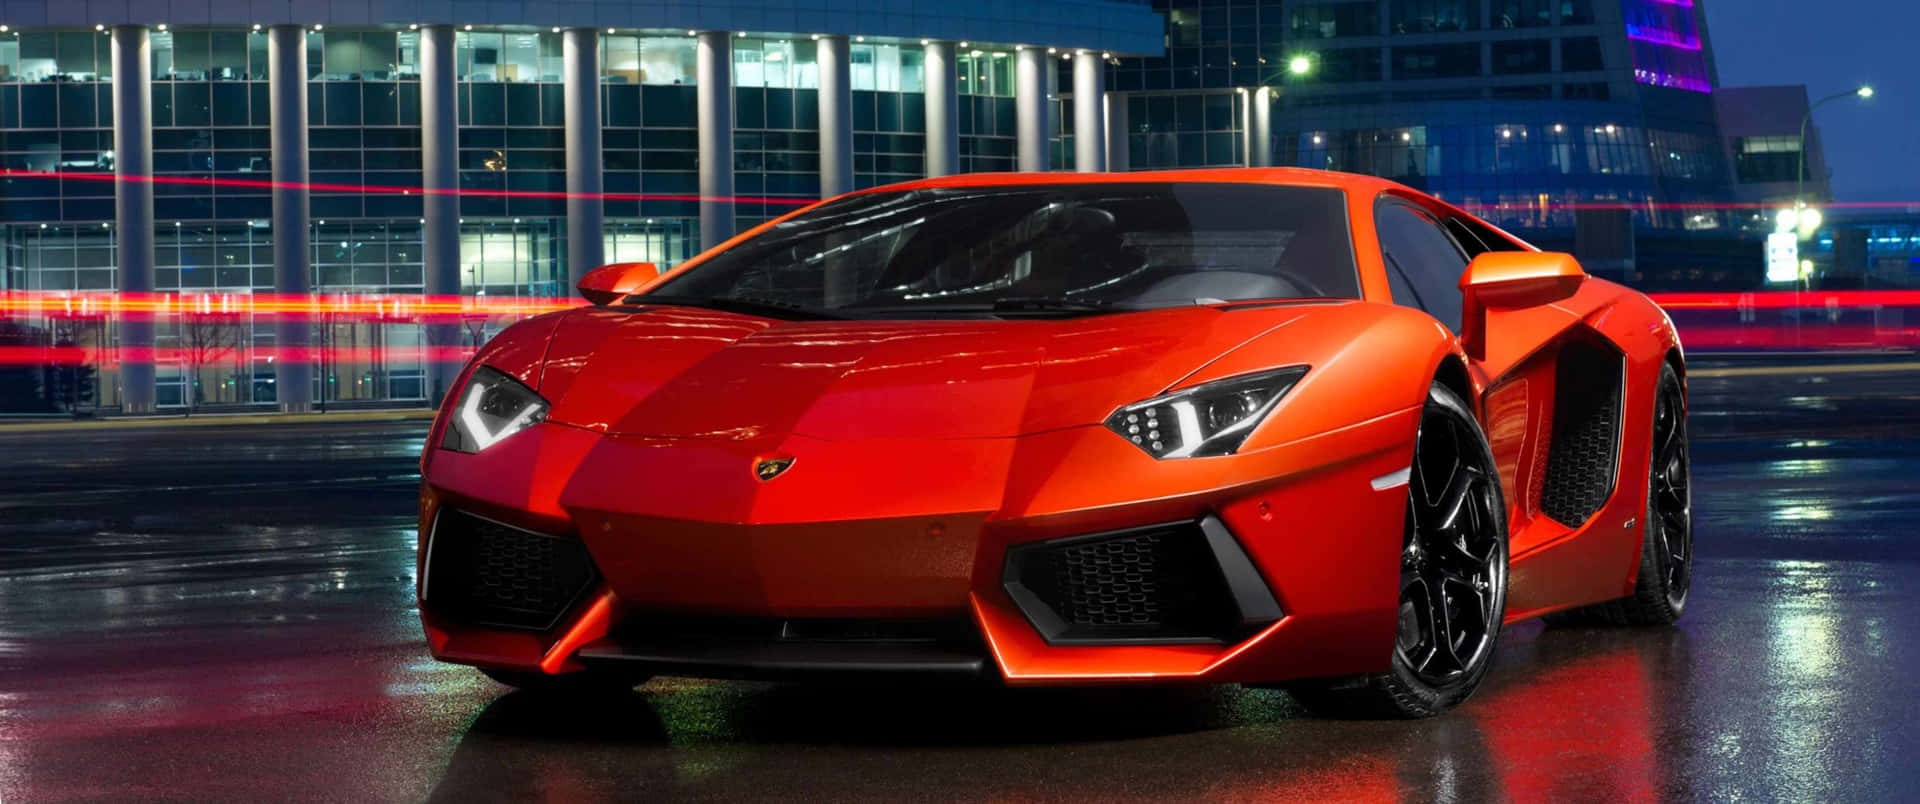 Red Lamborghini Urus with Luxury Interior